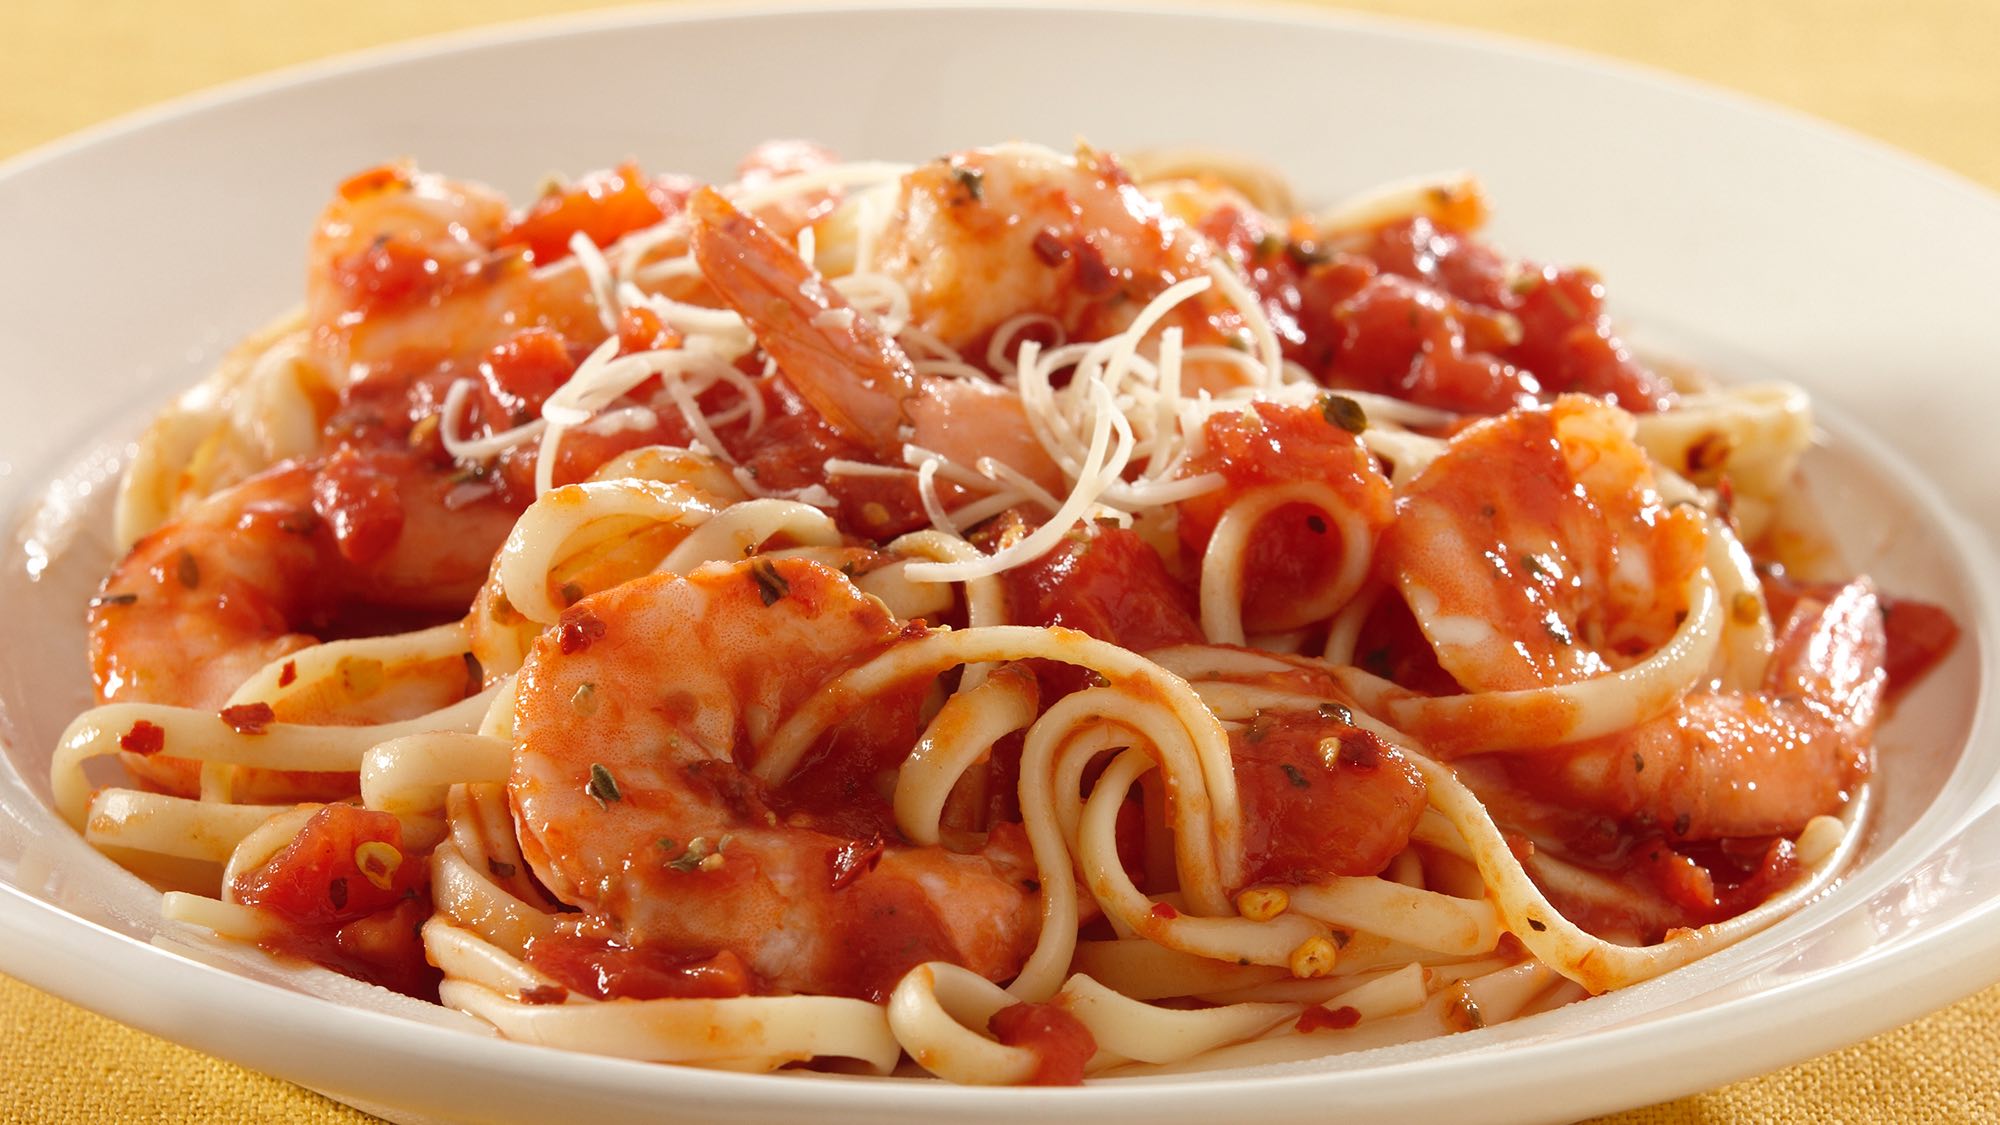 Спагетти со свининой в томатном соусе